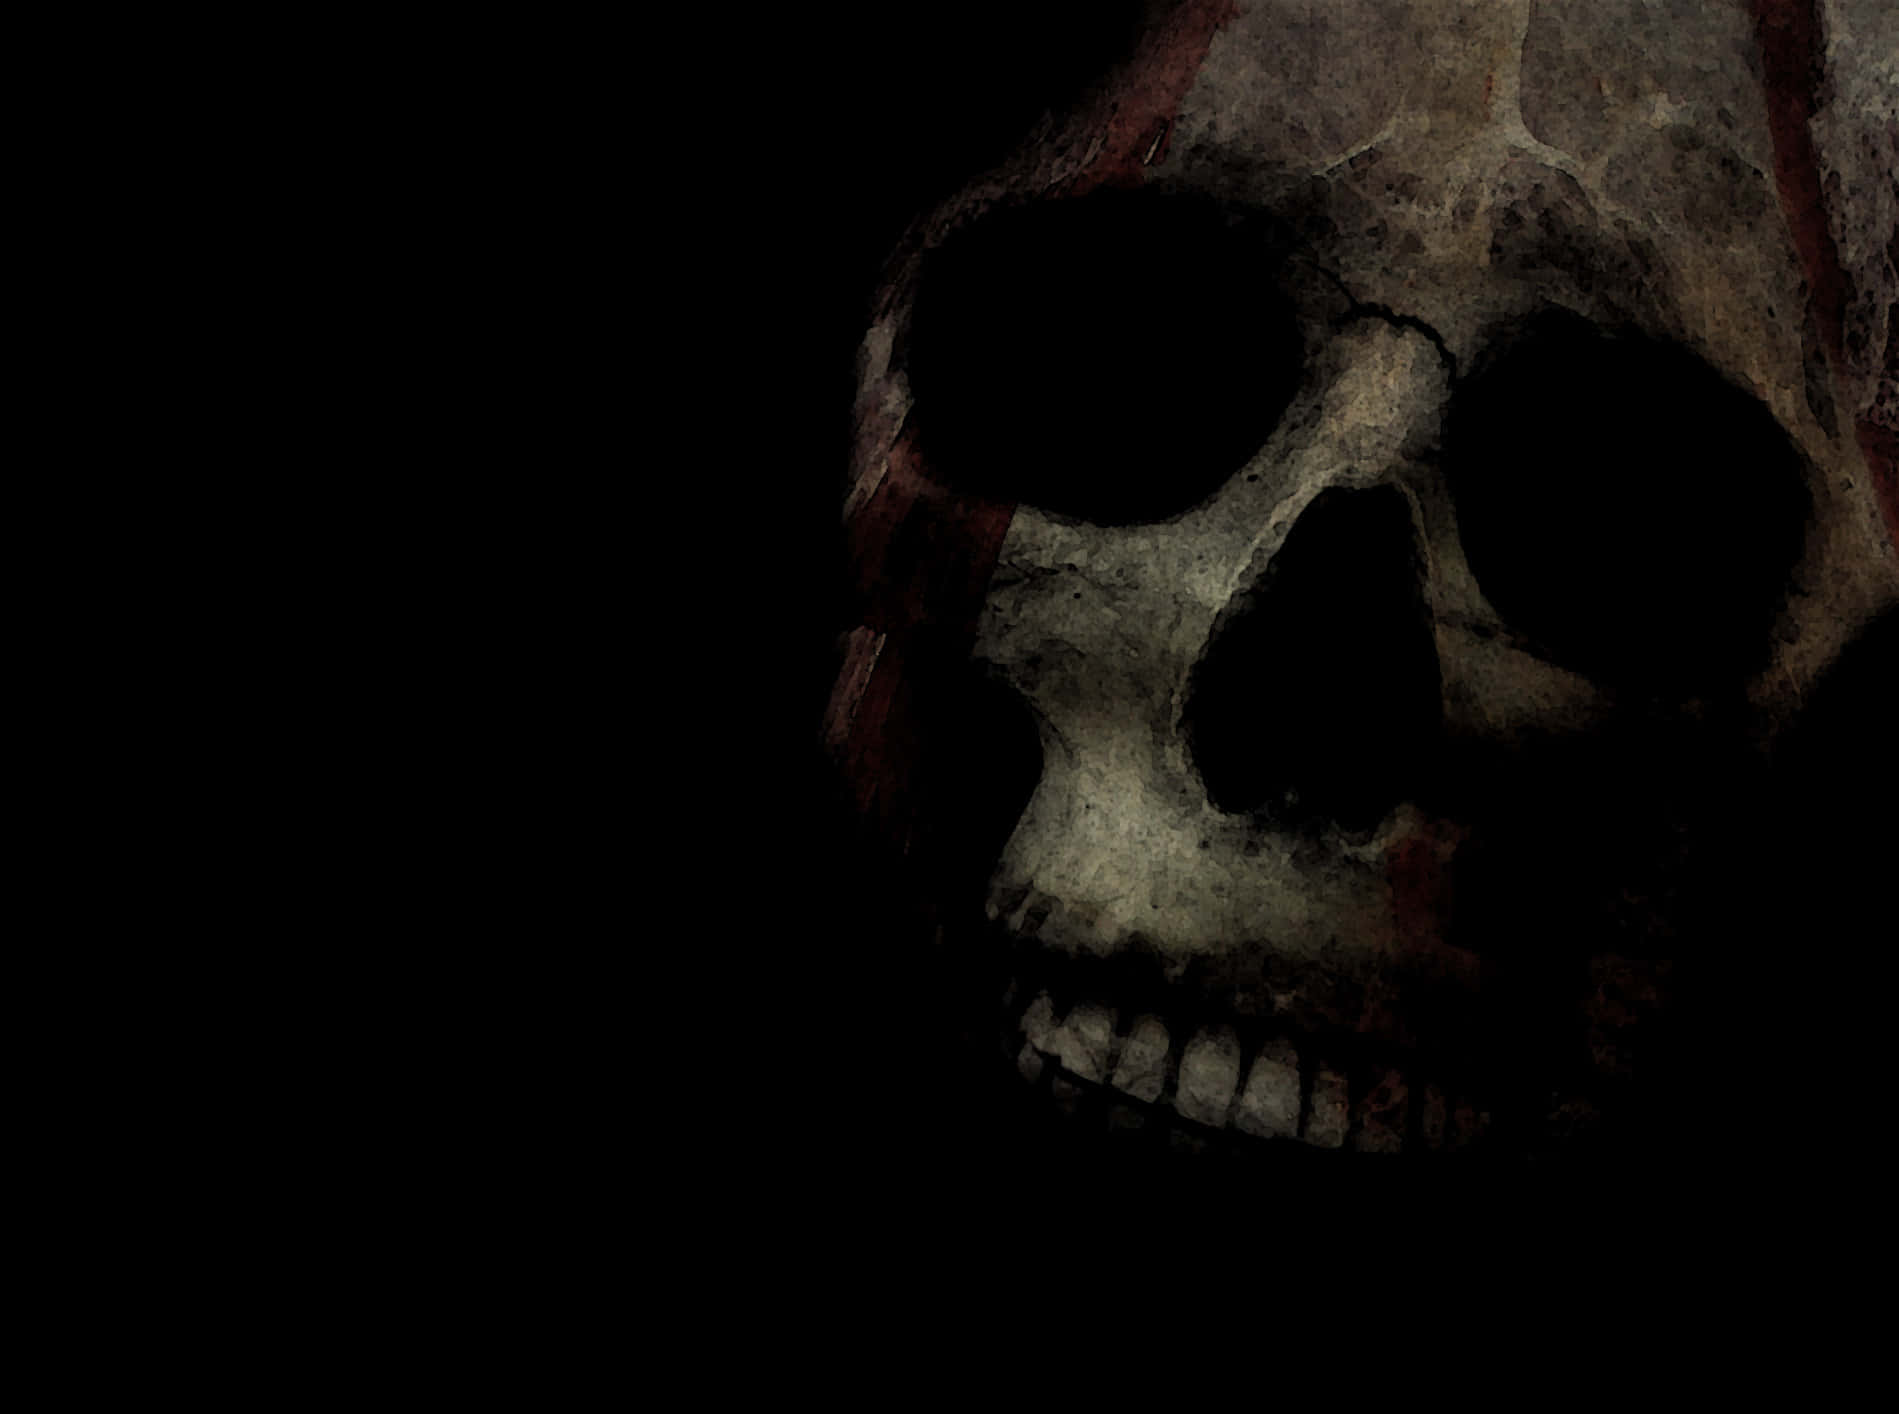 Skull Background